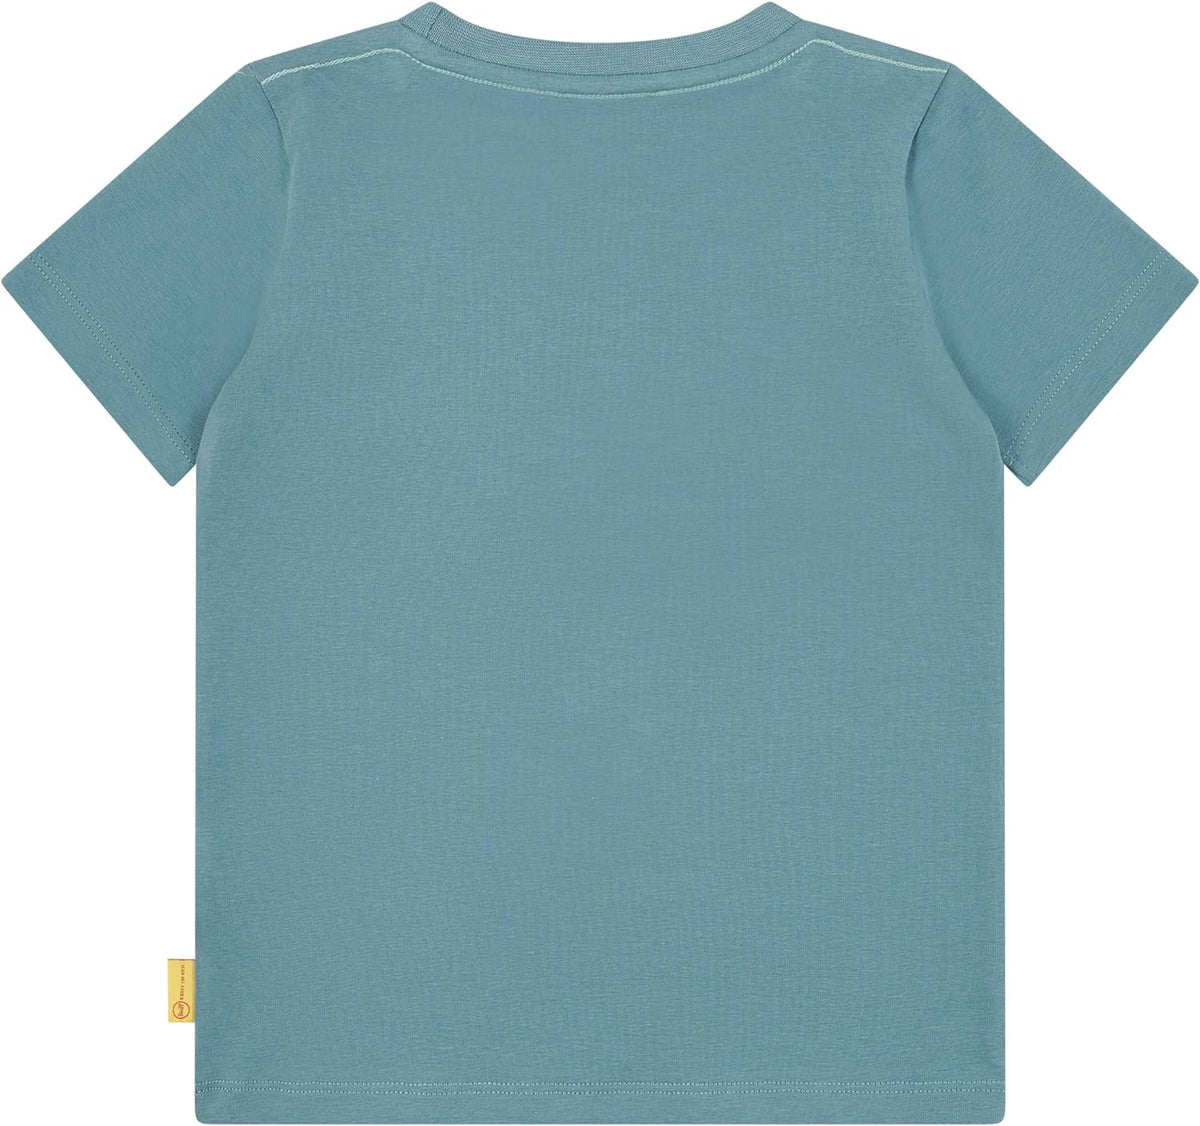 Jungen T-Shirt L002412108 6105 Blau